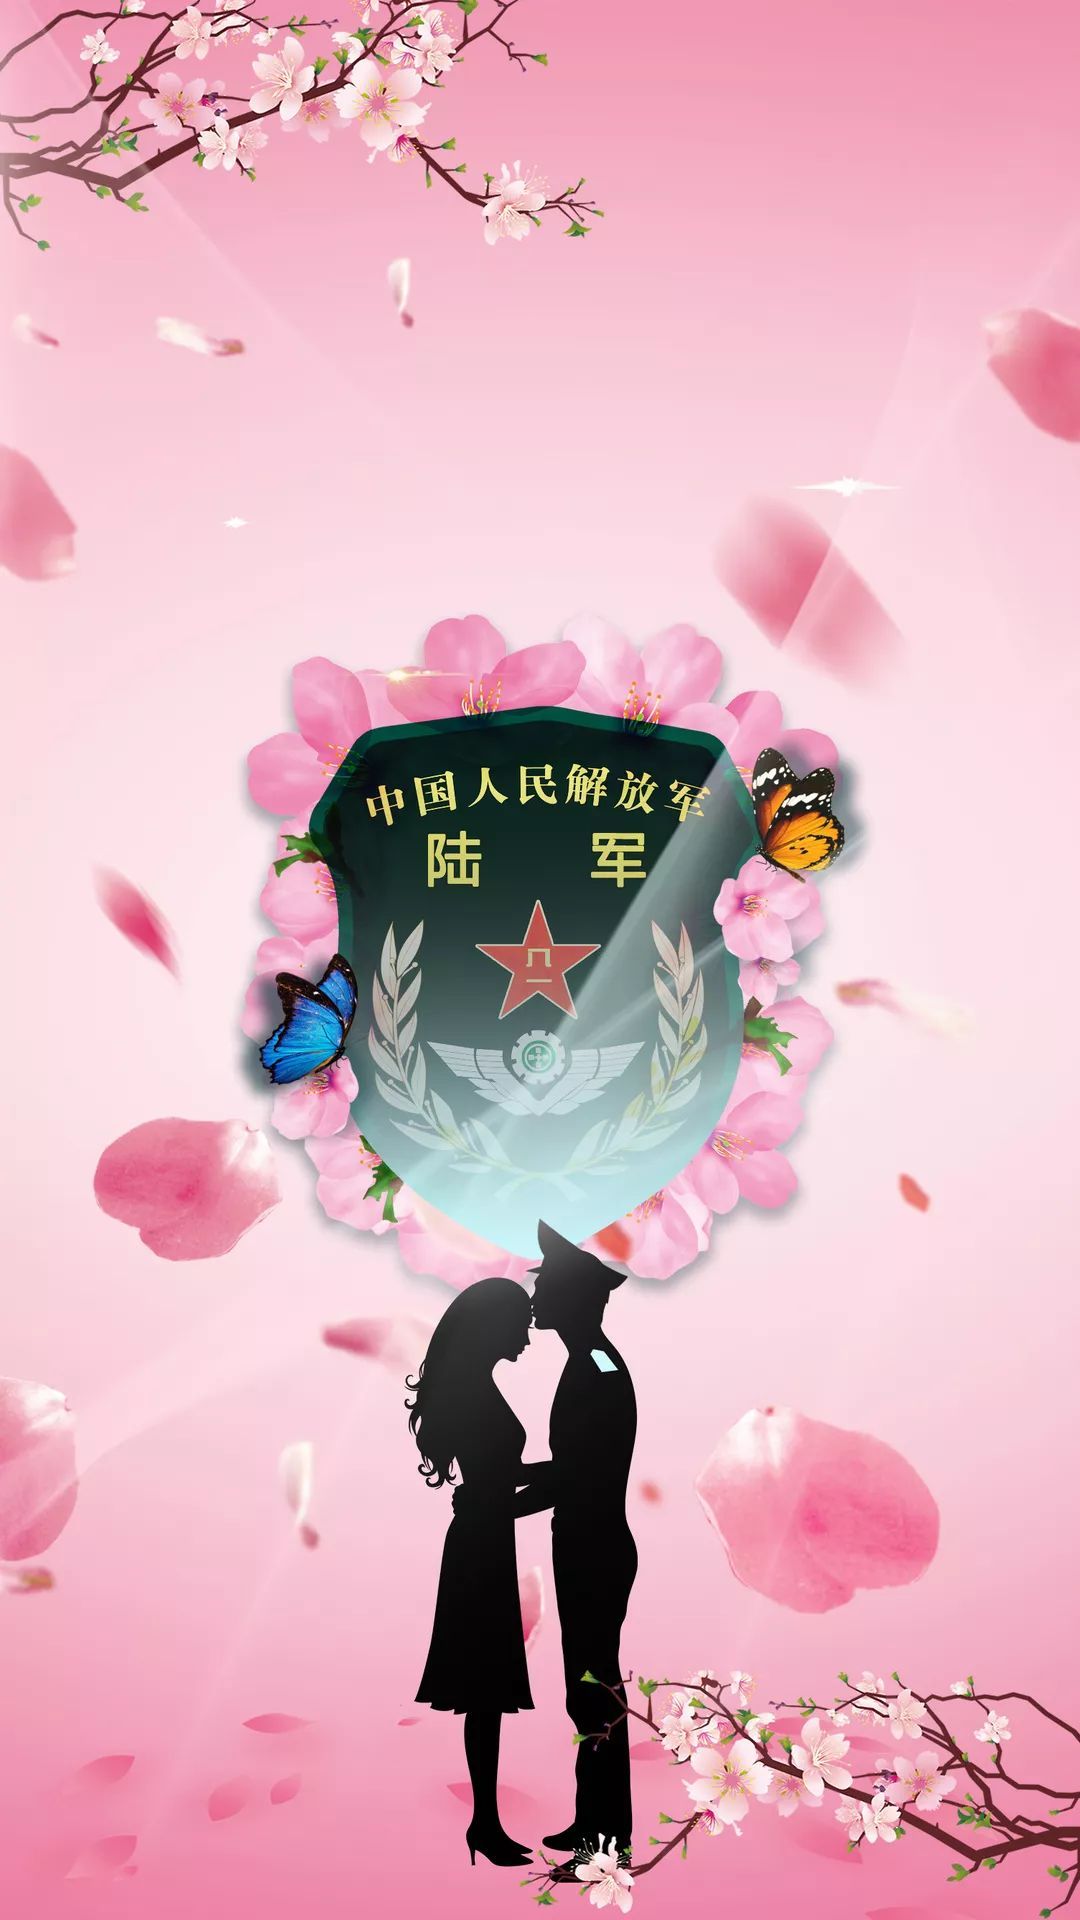 退伍季｜ 一组海报致敬军旅生涯 - 中国军网